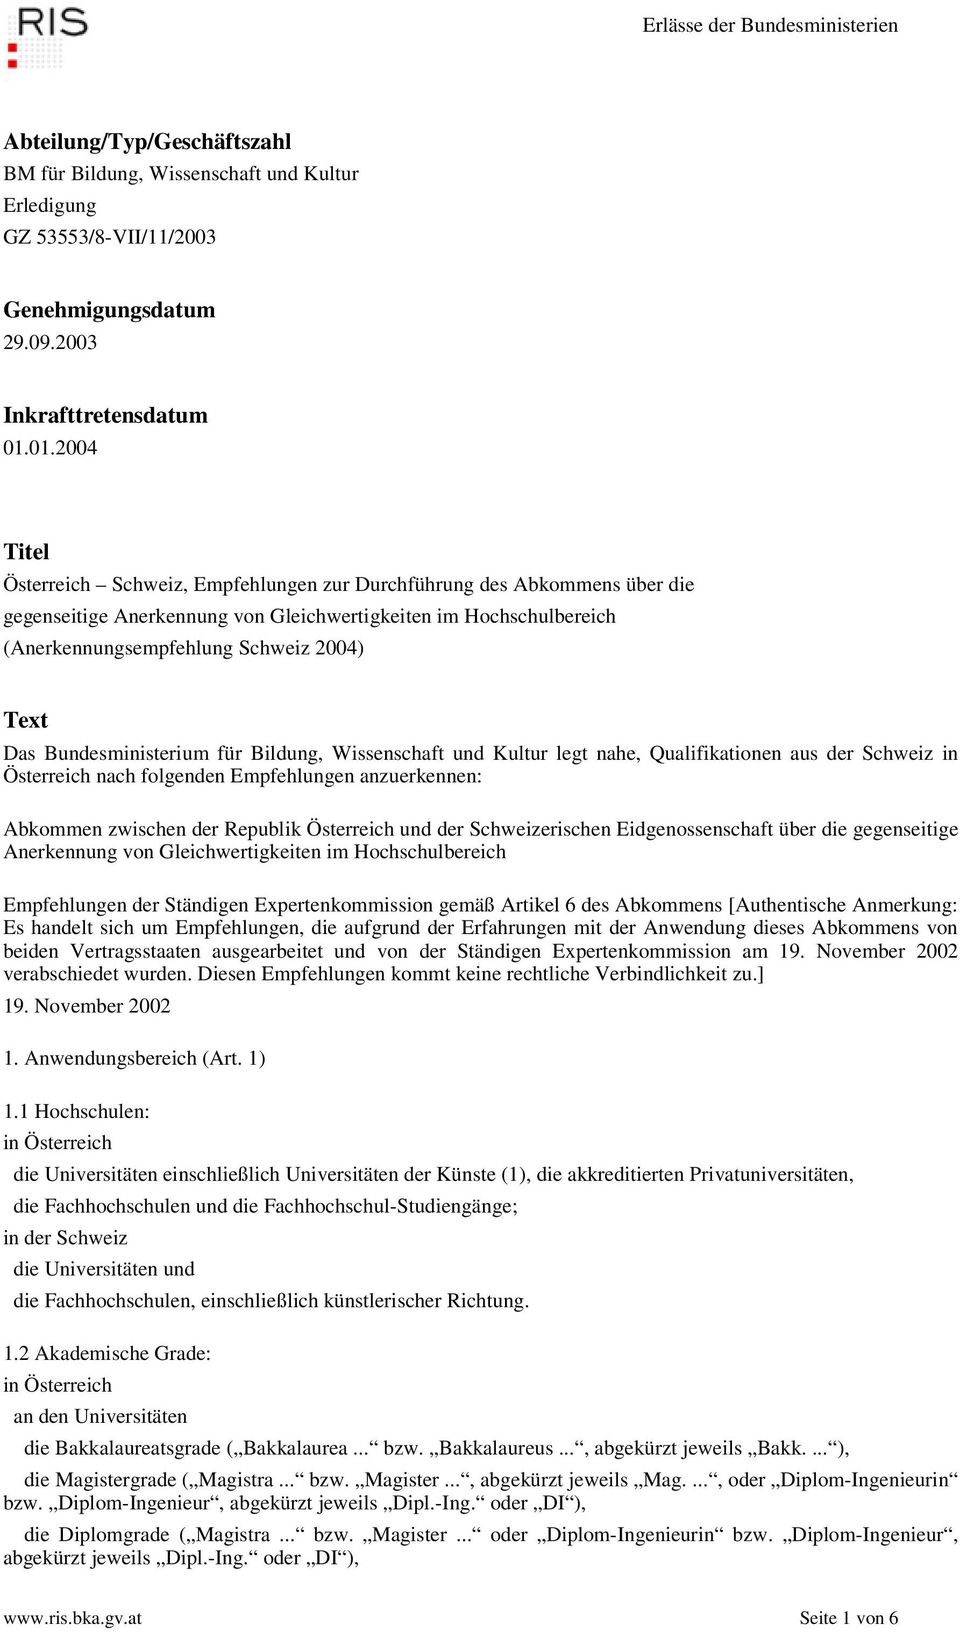 Das Bundesministerium für Bildung, Wissenschaft und Kultur legt nahe, Qualifikationen aus der Schweiz in Österreich nach folgenden Empfehlungen anzuerkennen: Abkommen zwischen der Republik Österreich